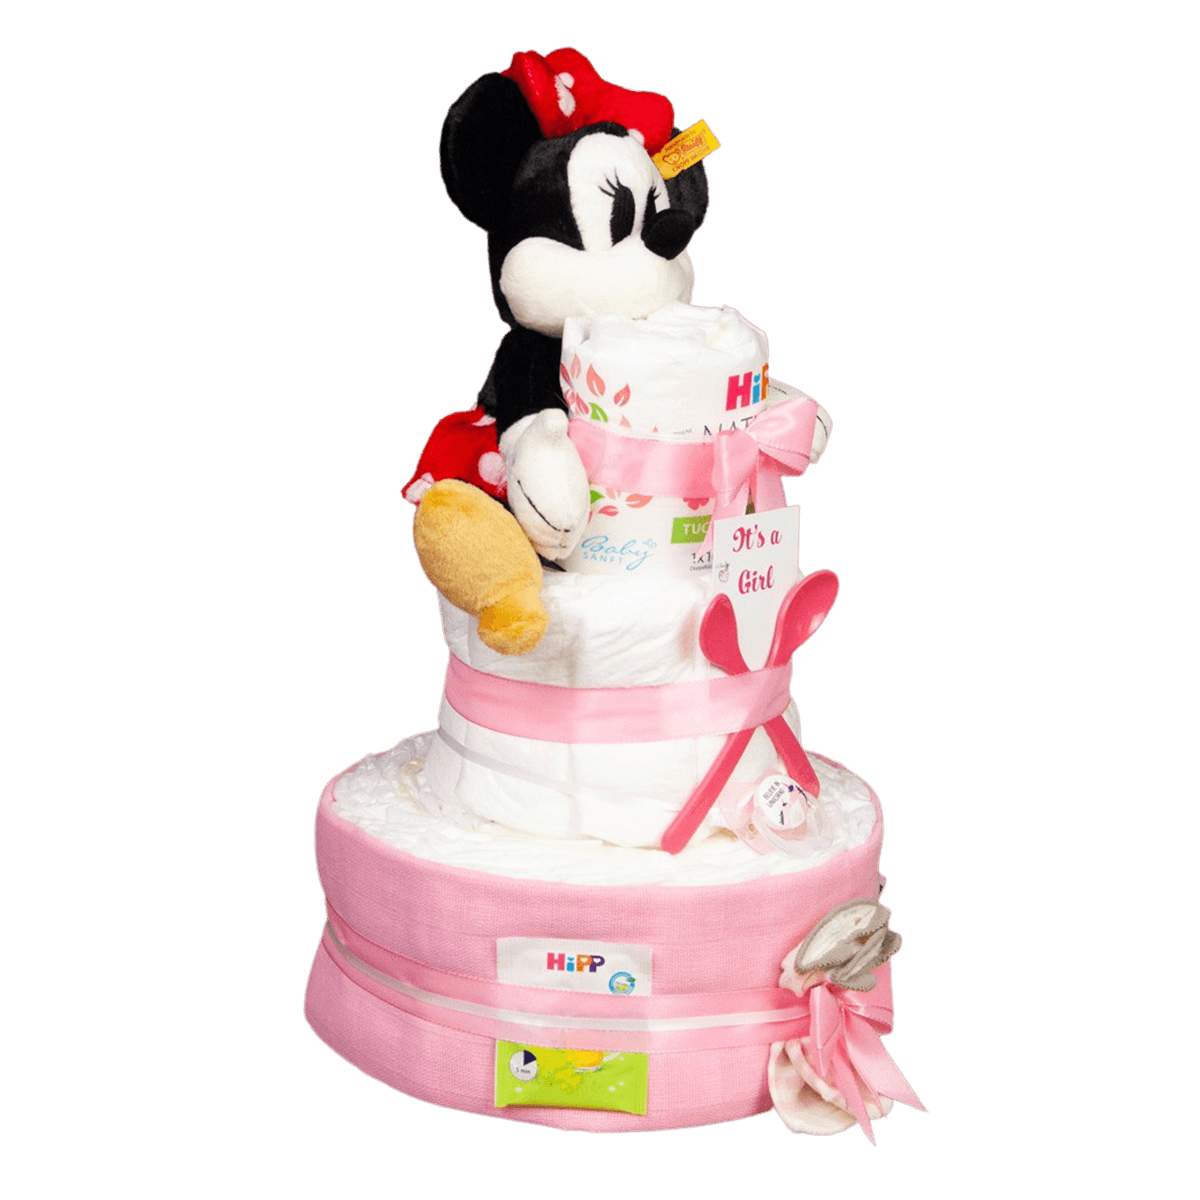 Süße Windeltorte für Mädchen mit Minnie Mouse Design - Jetzt bestellen